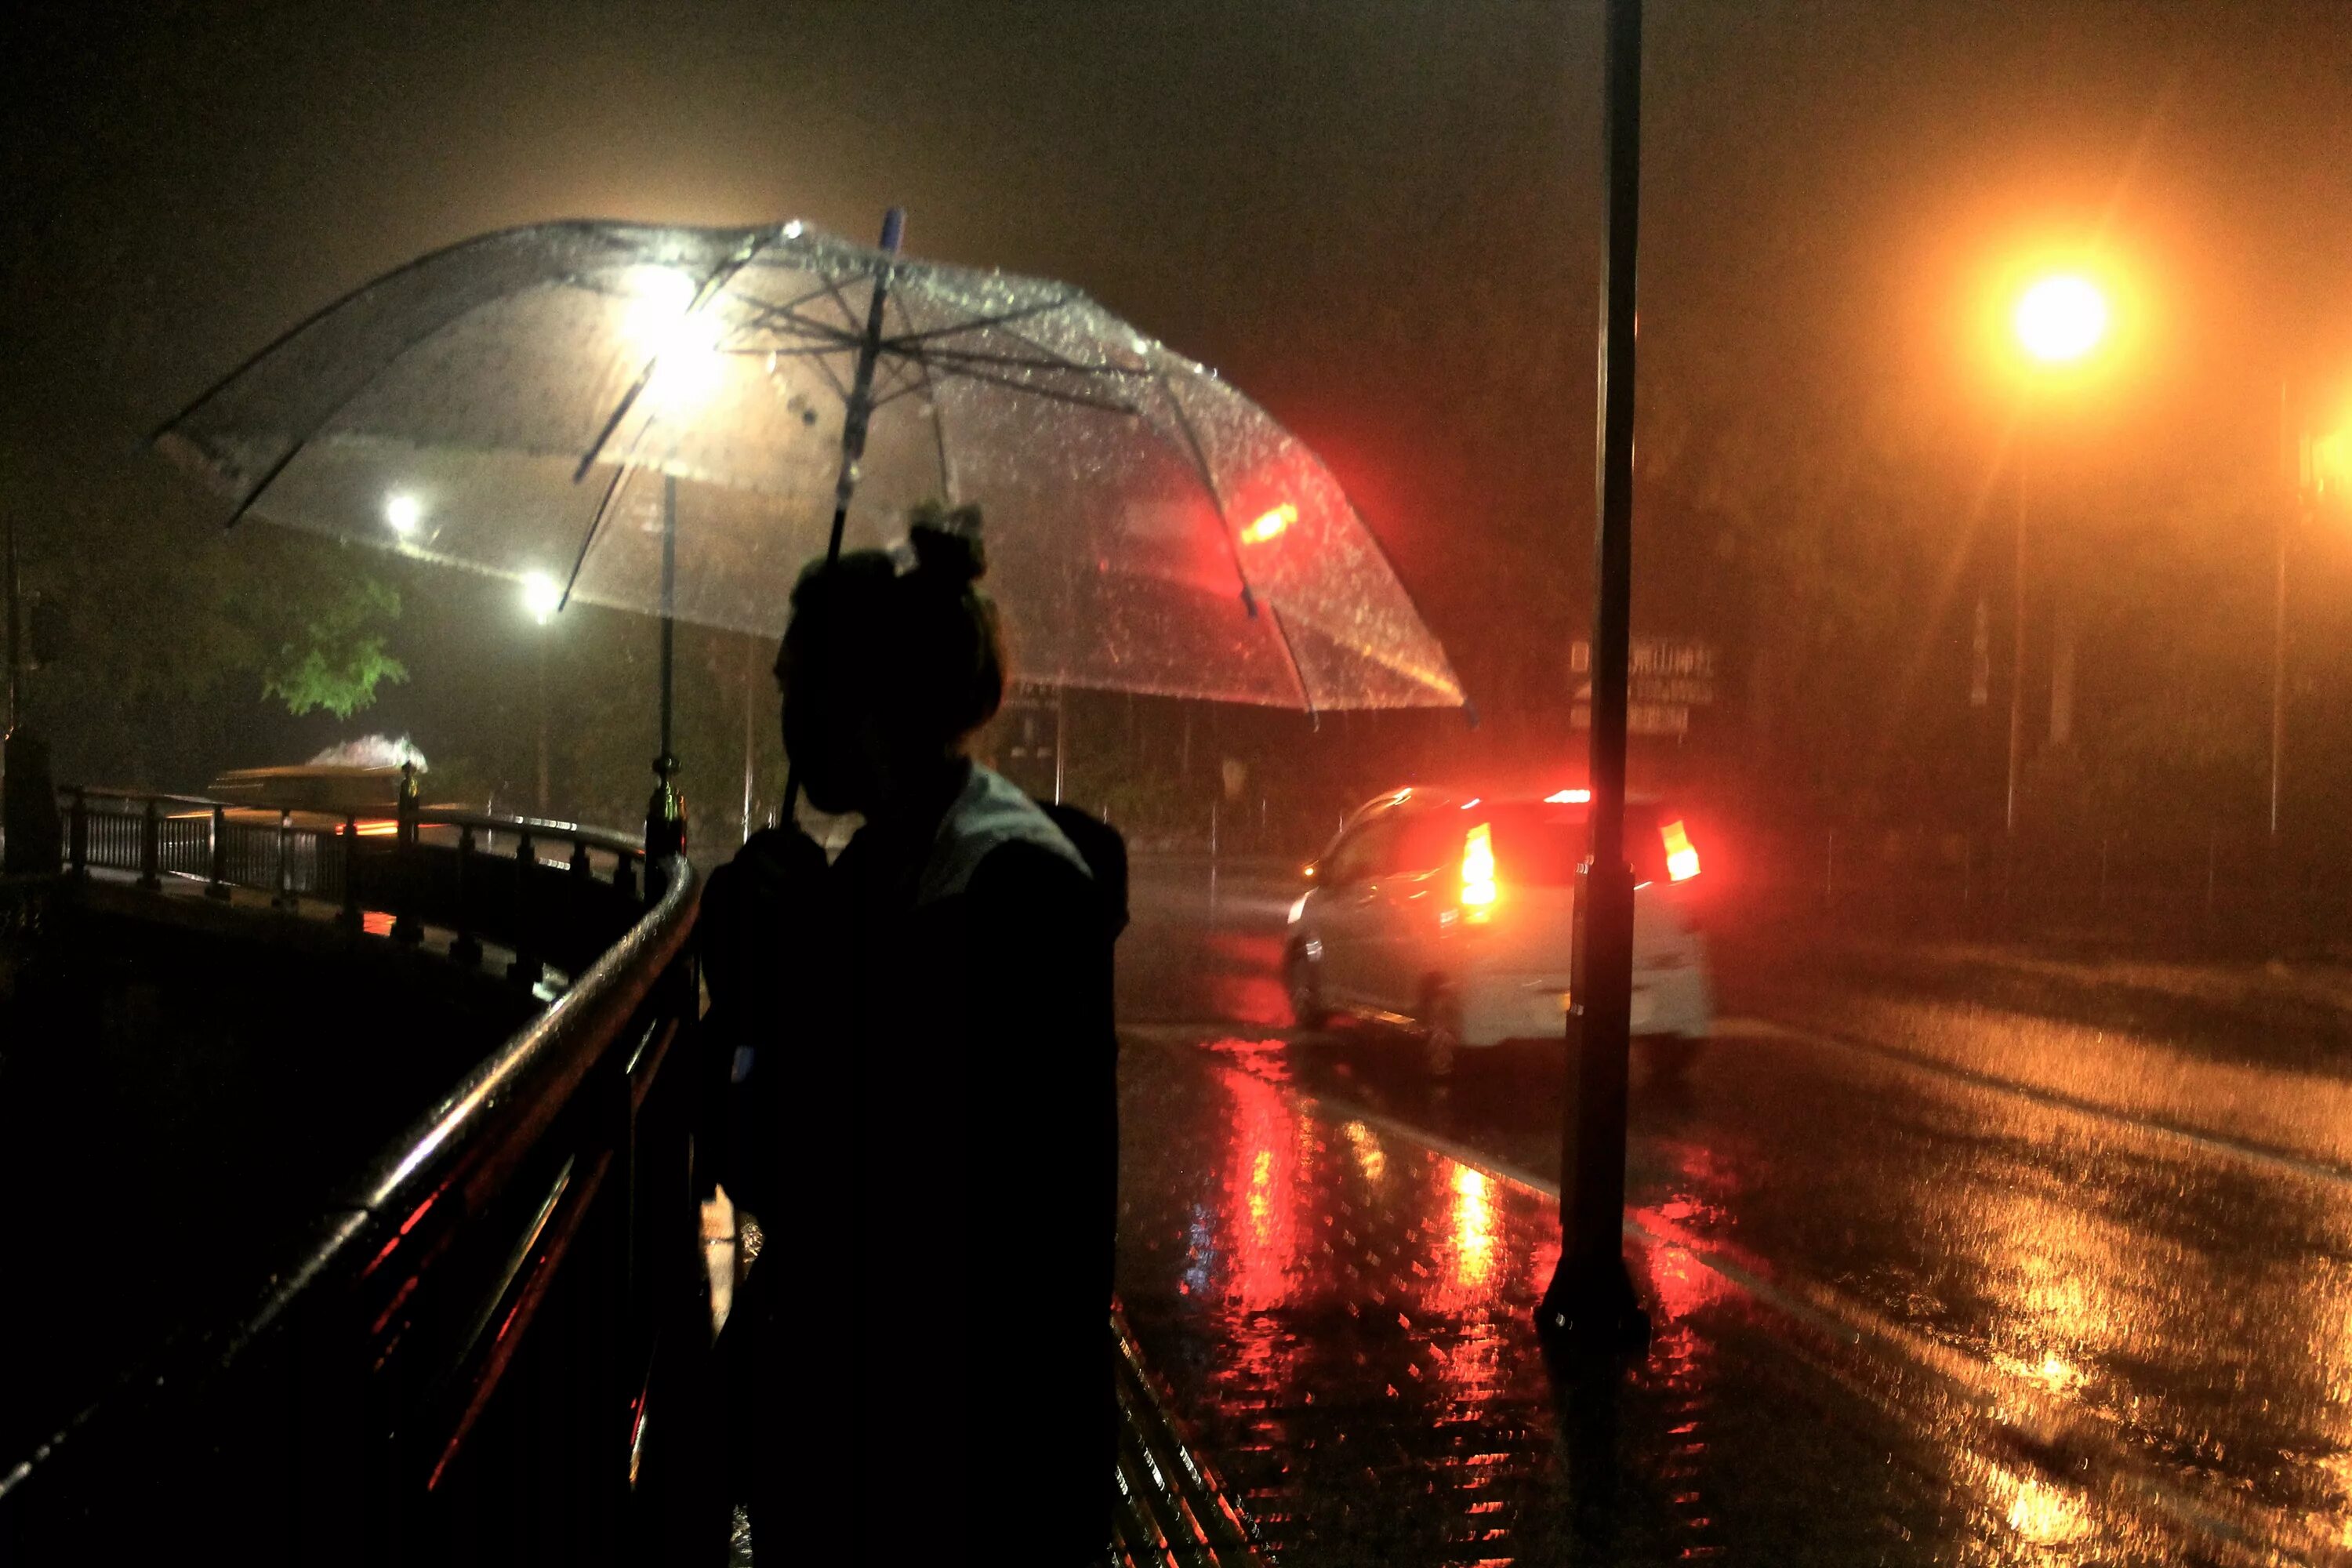 Дождь ночью. Человек под зонтом. Город ночью под дождем. "Дождливый вечер". Поздним ненастным вечером геологи